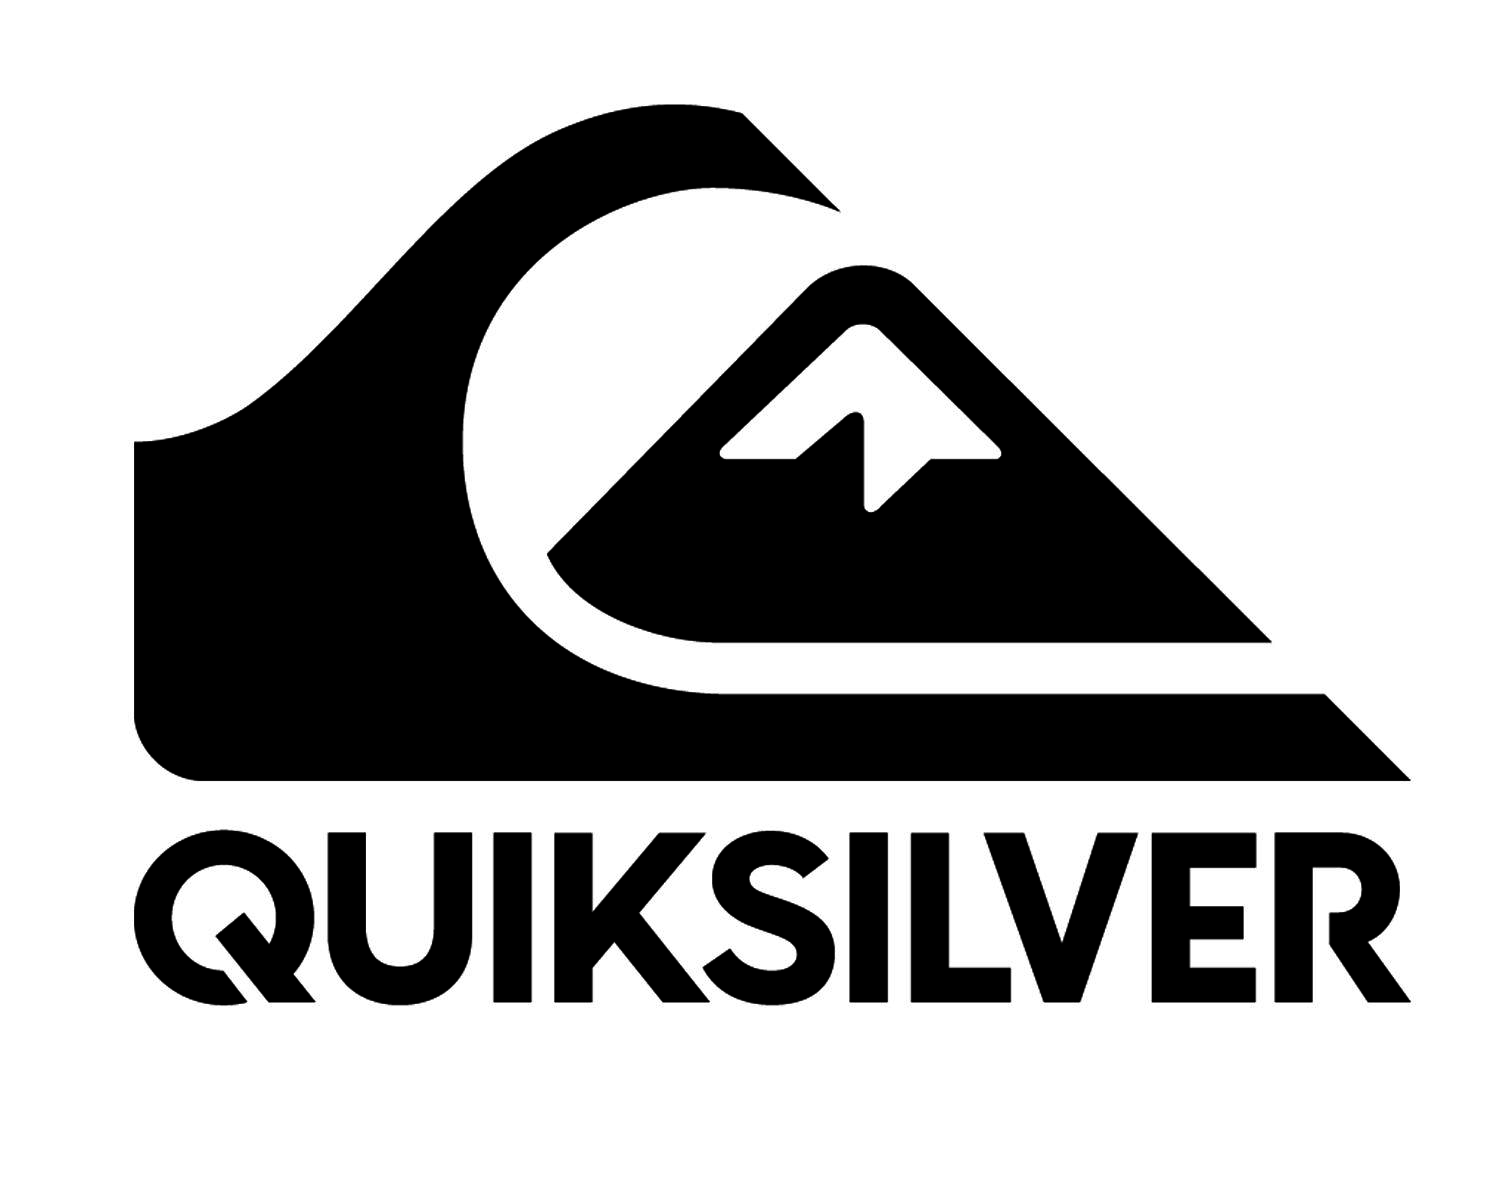 Quiksilver Logo Desktop Wallpapers - Wallpaper Cave